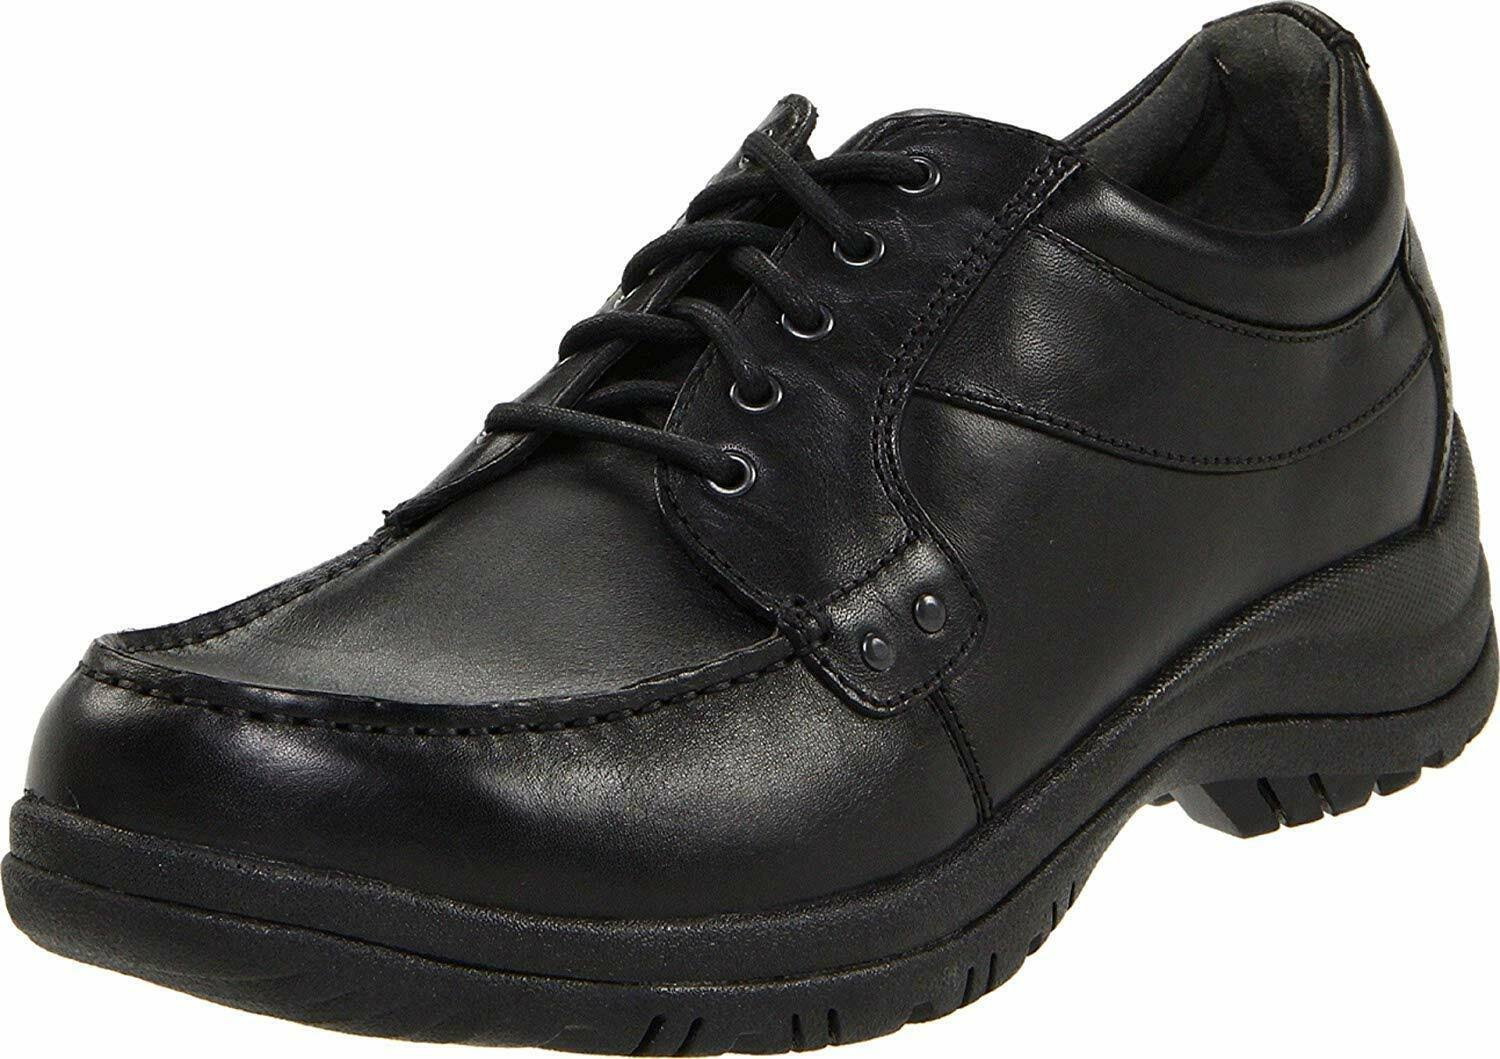 Dansko Men's Wyatt Full Grain Oxford Shoes - Black, 12.5 US